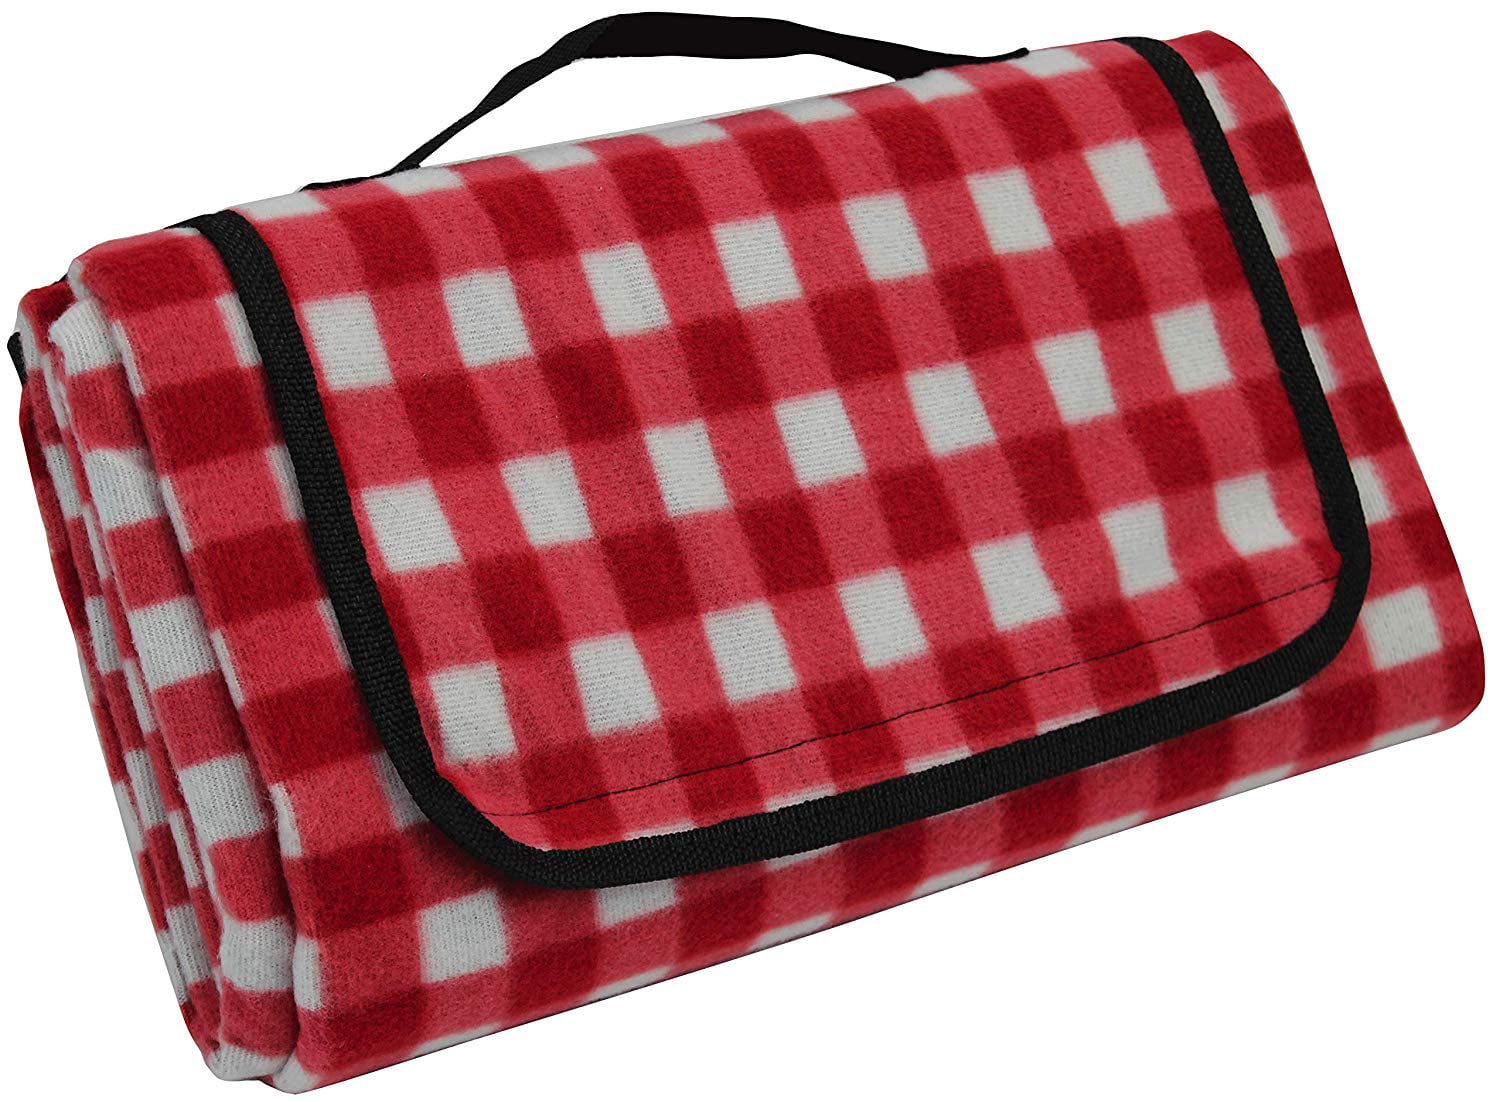 colour in picnic blanket